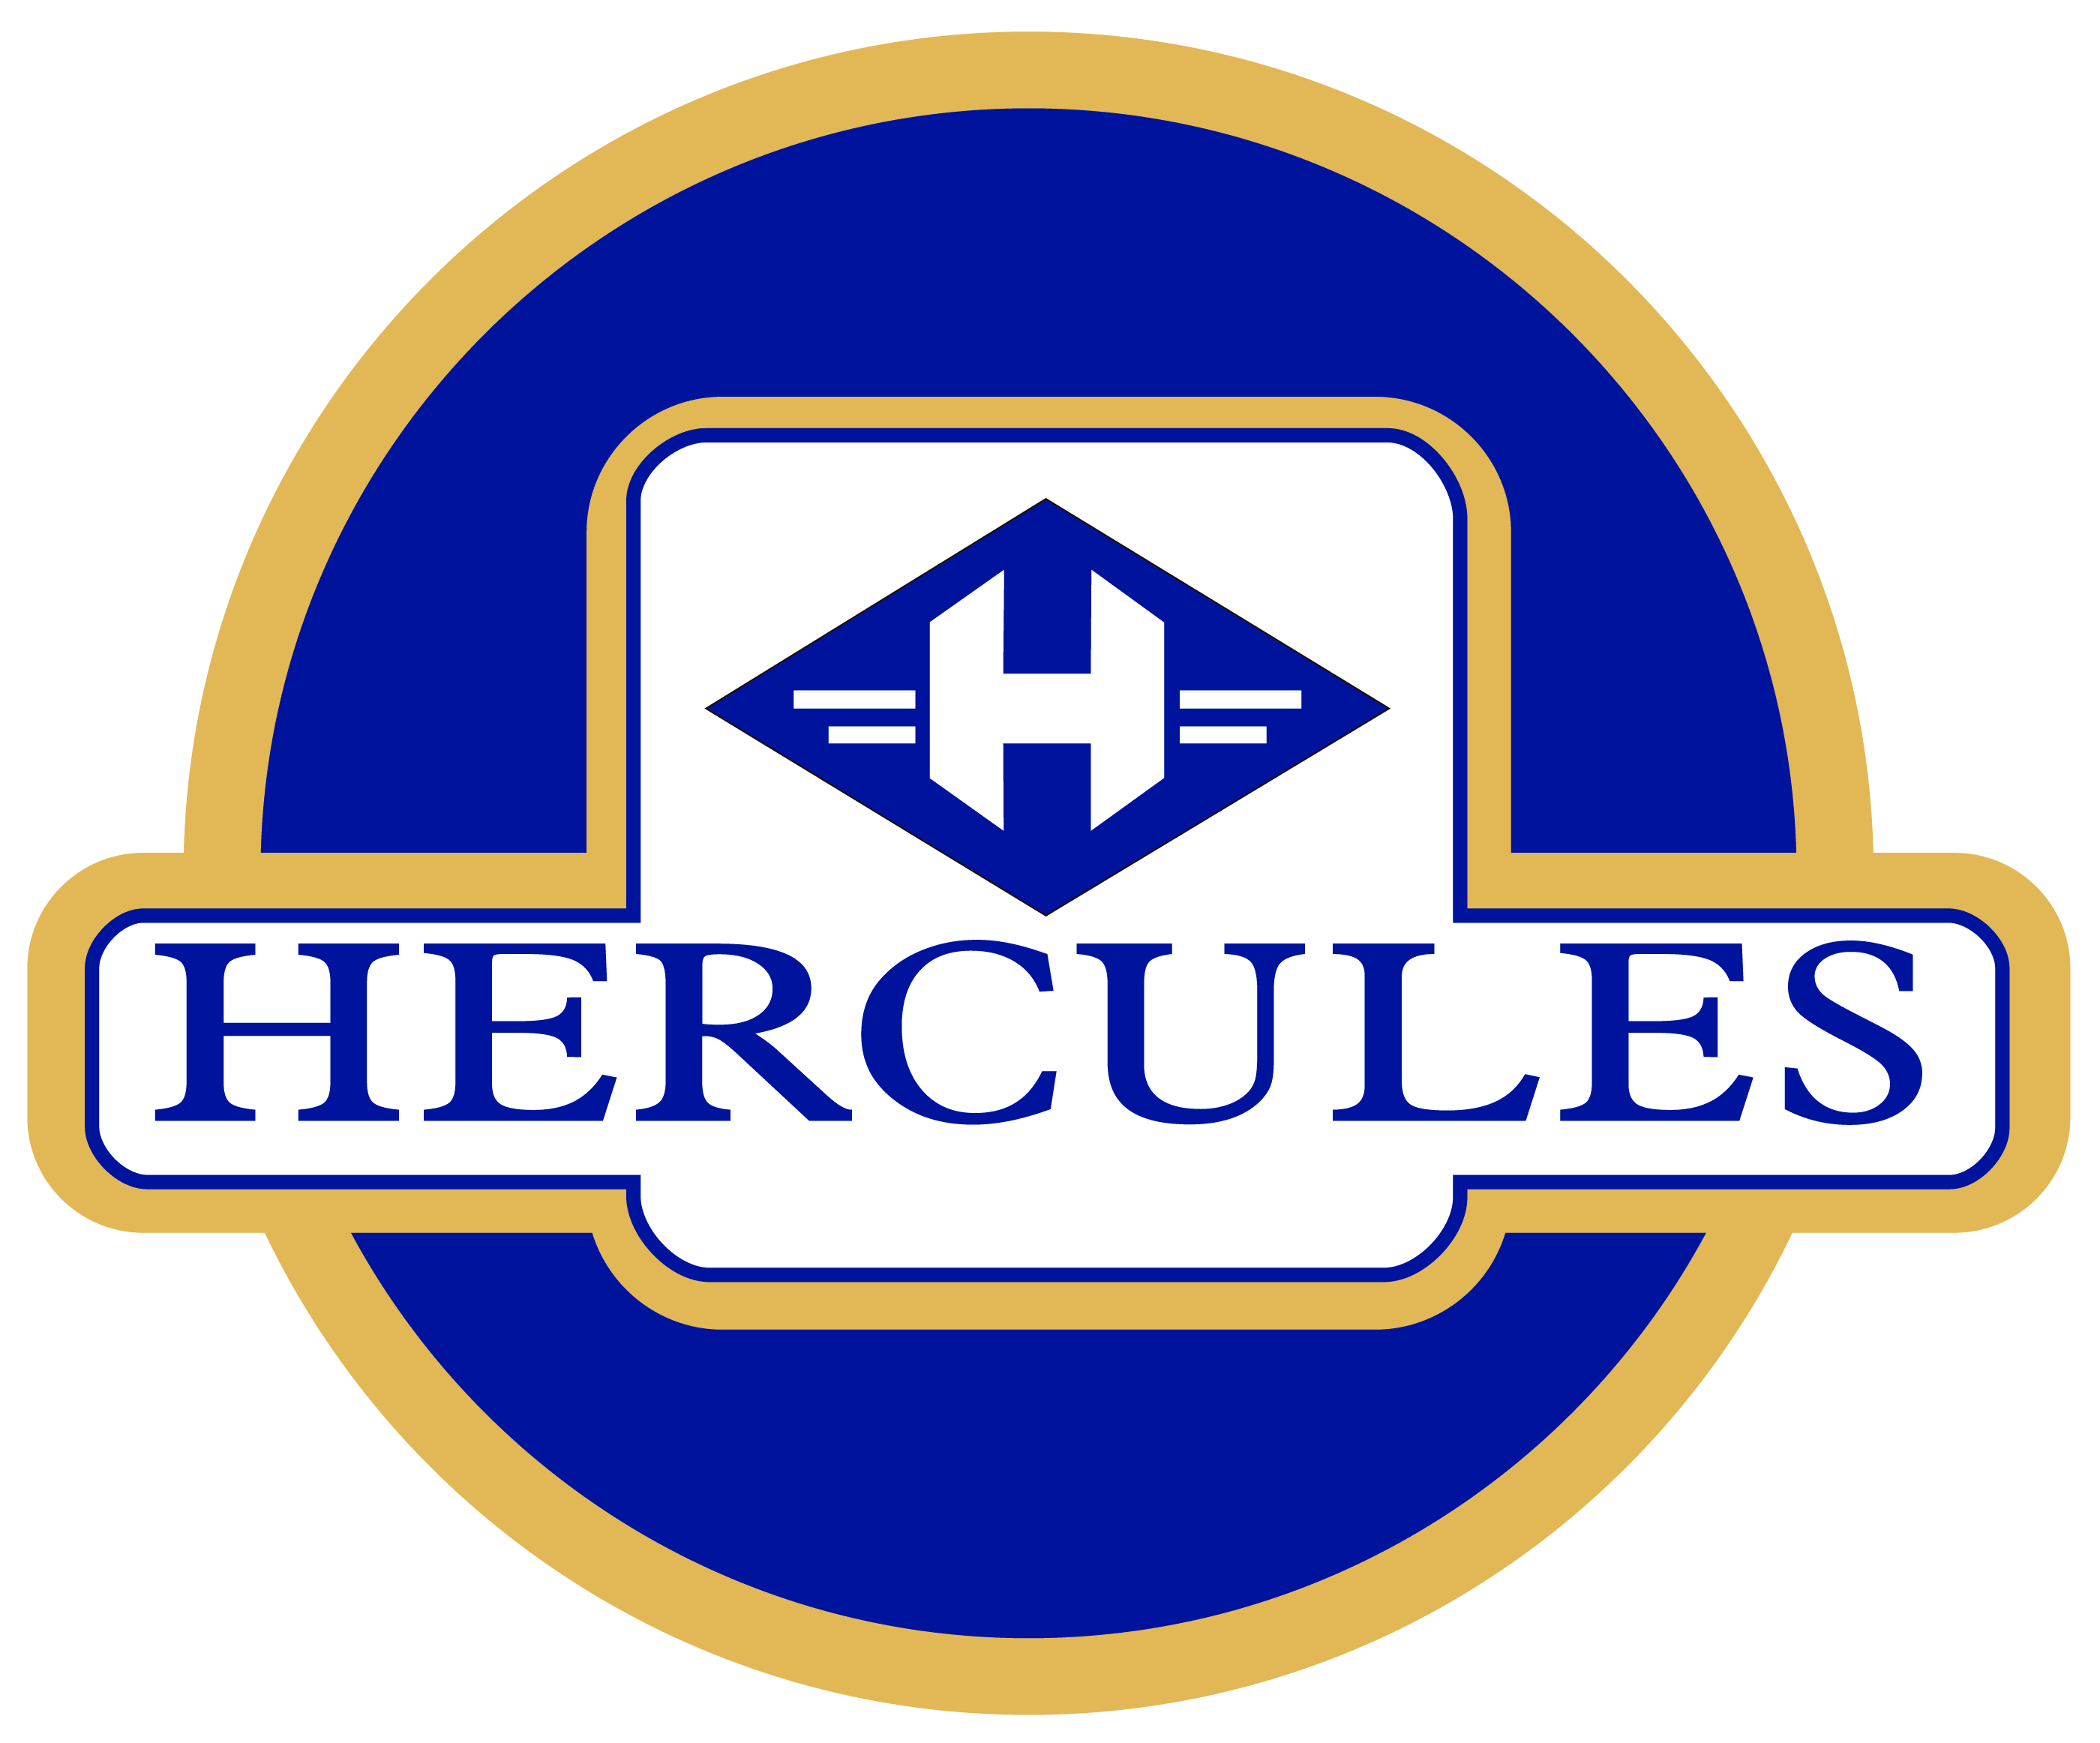 Hercules Logo - Hercules logo